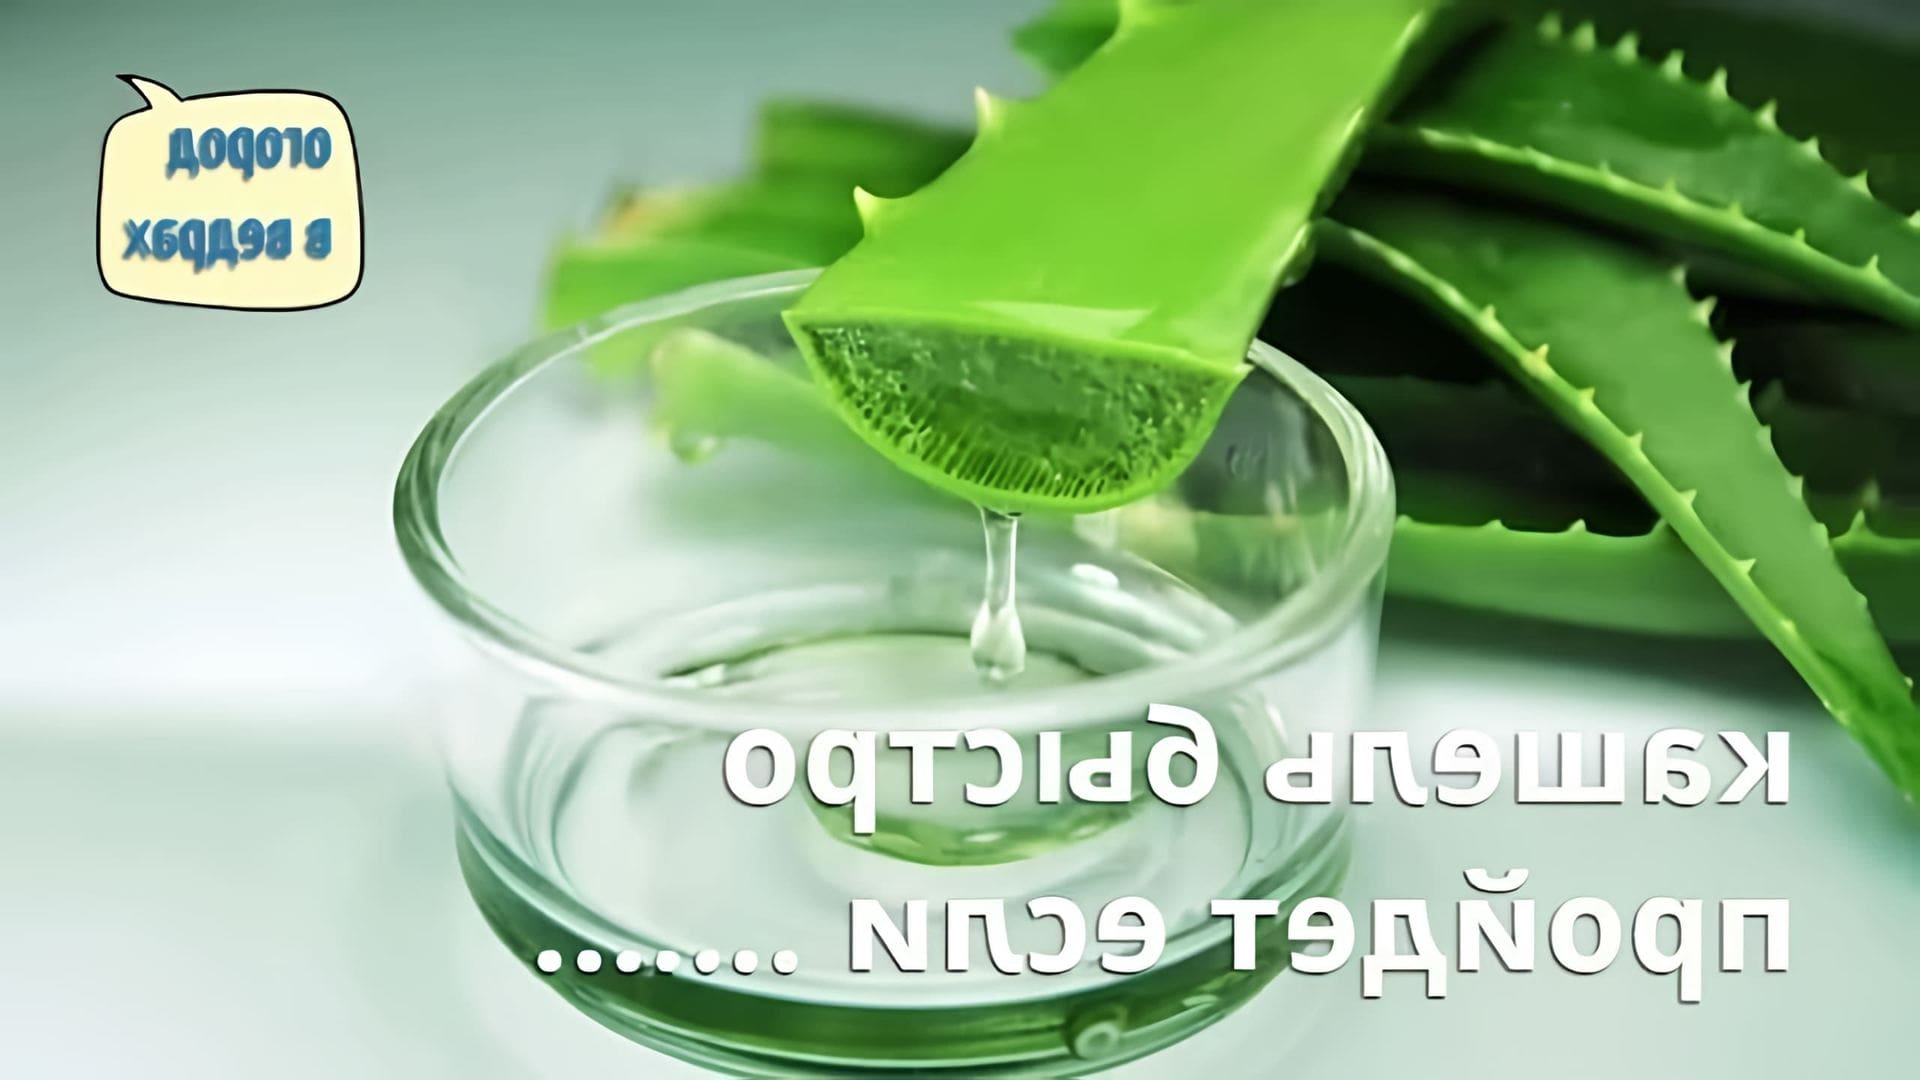 В этом видео рассказывается о простом рецепте лекарства от кашля, которое можно приготовить из алоэ и меда